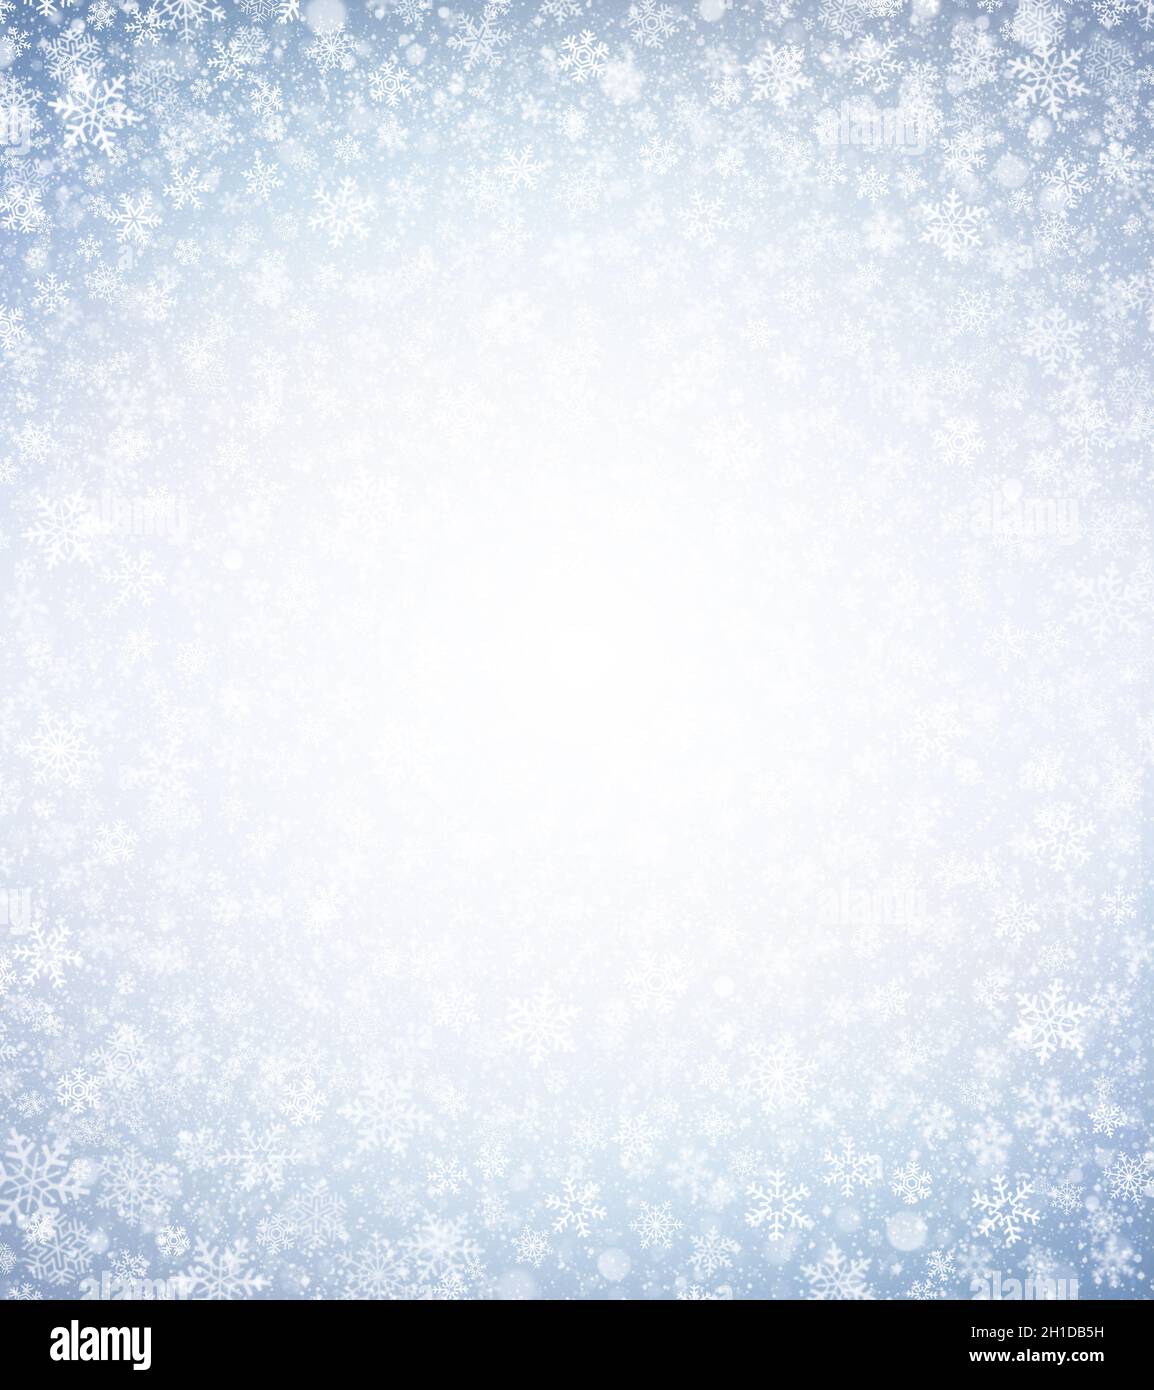 Weiße Schneeflocken Formen und Schnee explodieren auf einem silberblauen Winter Hintergrund. Material für die Weihnachtszeit. Stockfoto